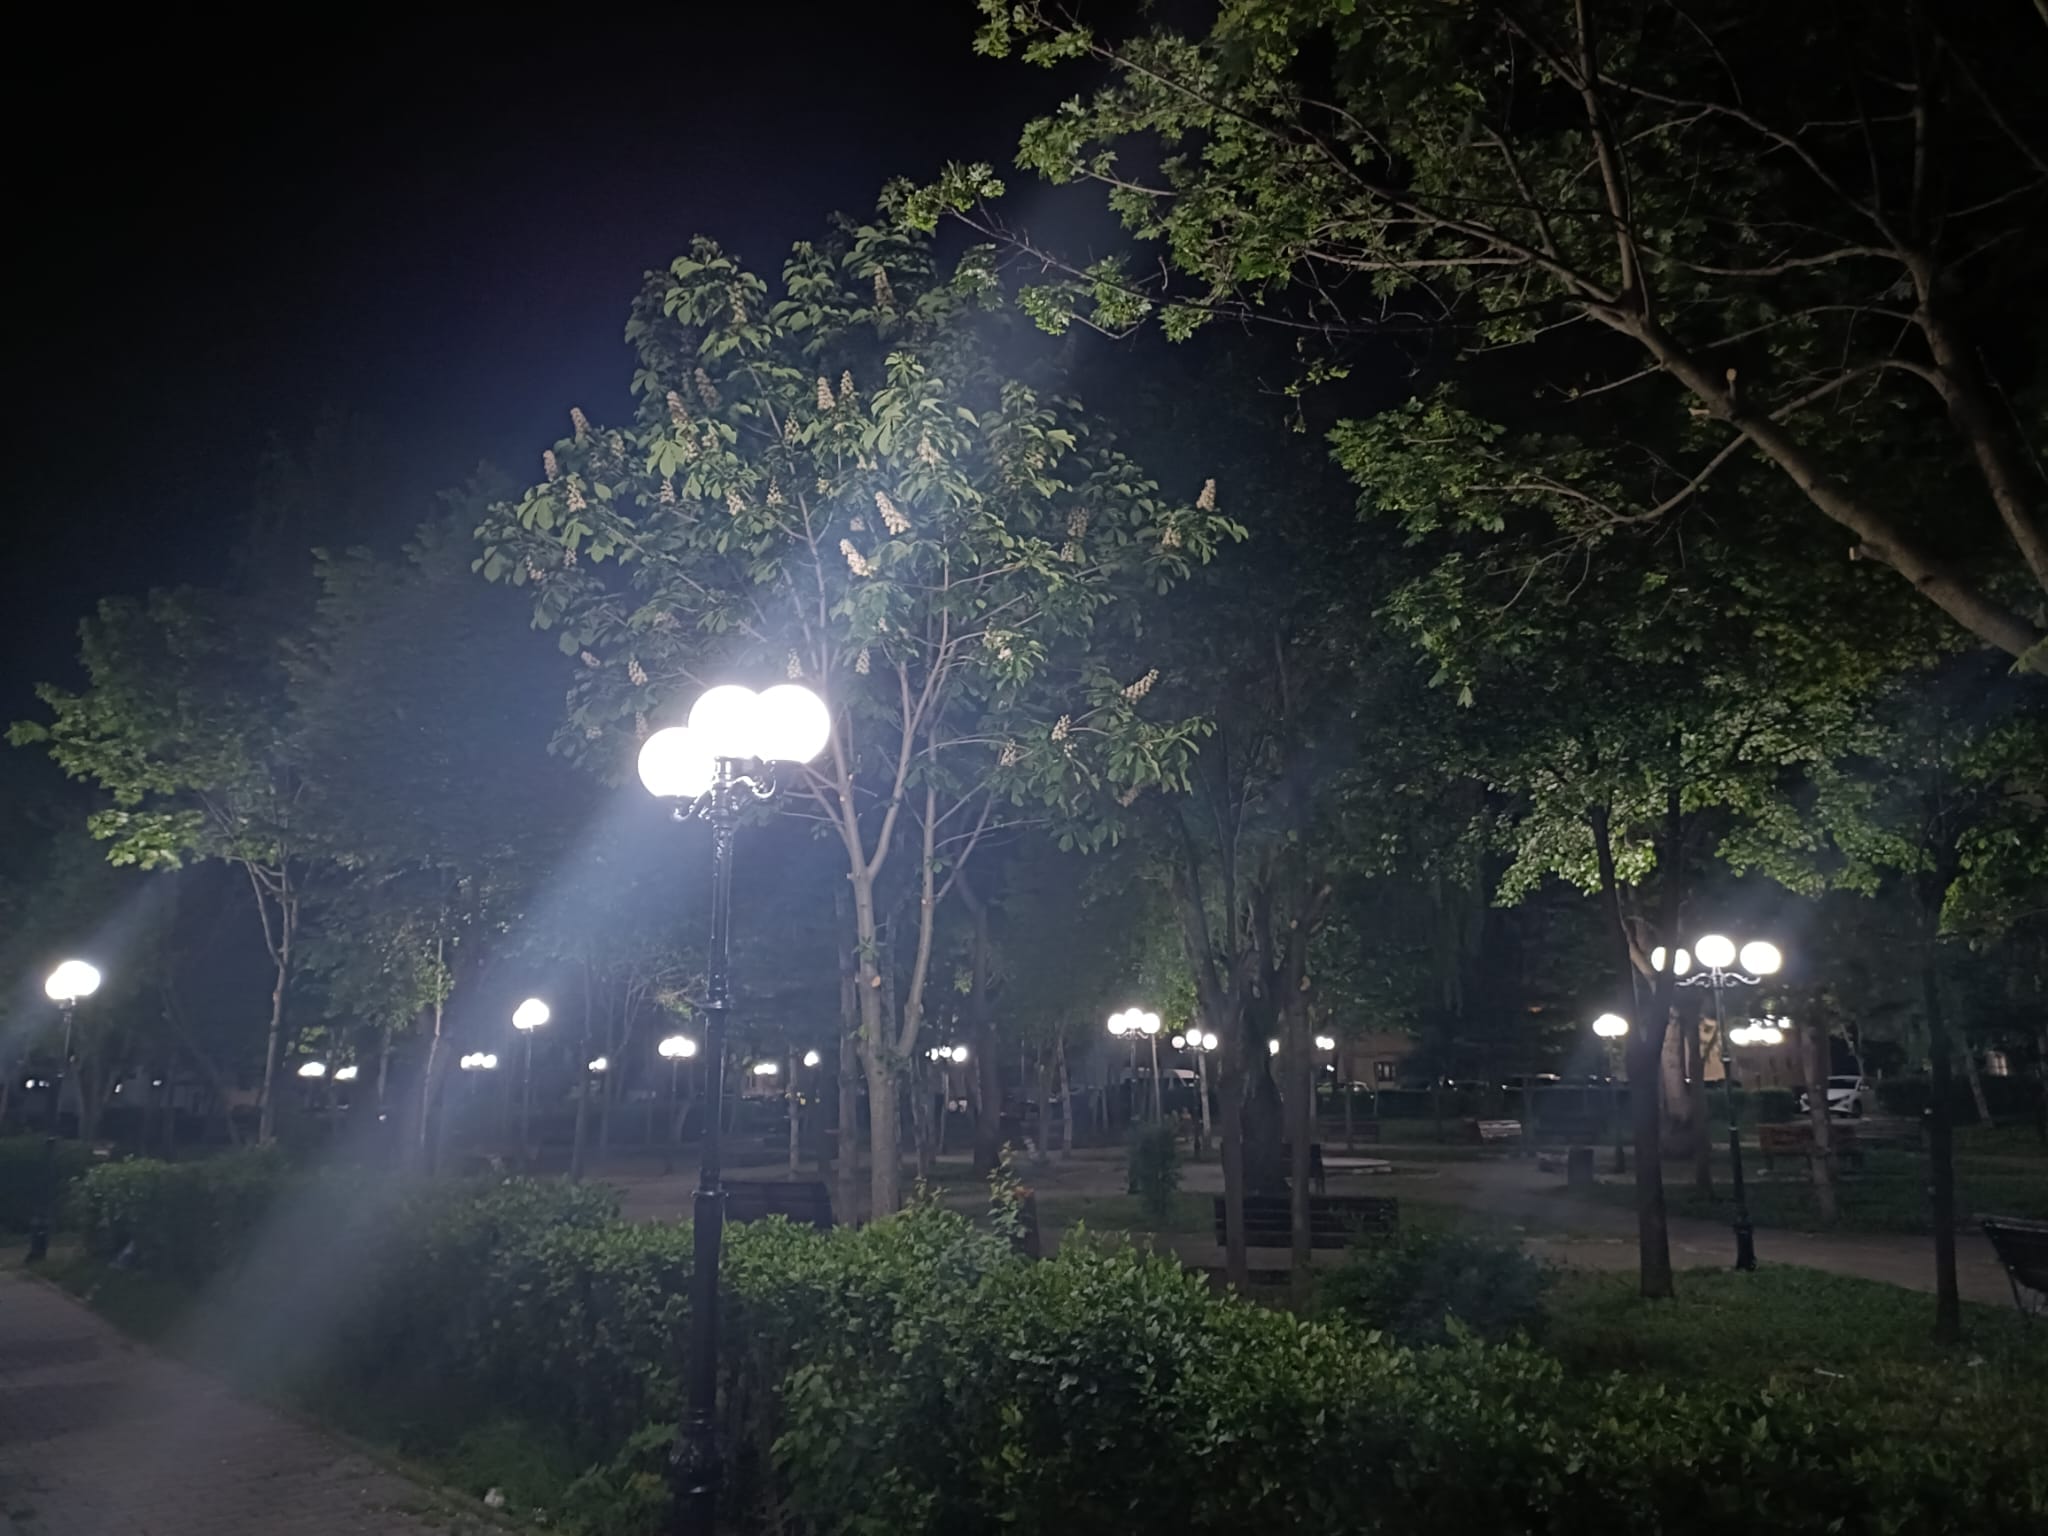 Giurgiu Servicii Publice a finalizat acțiunile de reabilitare a sistemului de iluminat public din parcul Clopotari